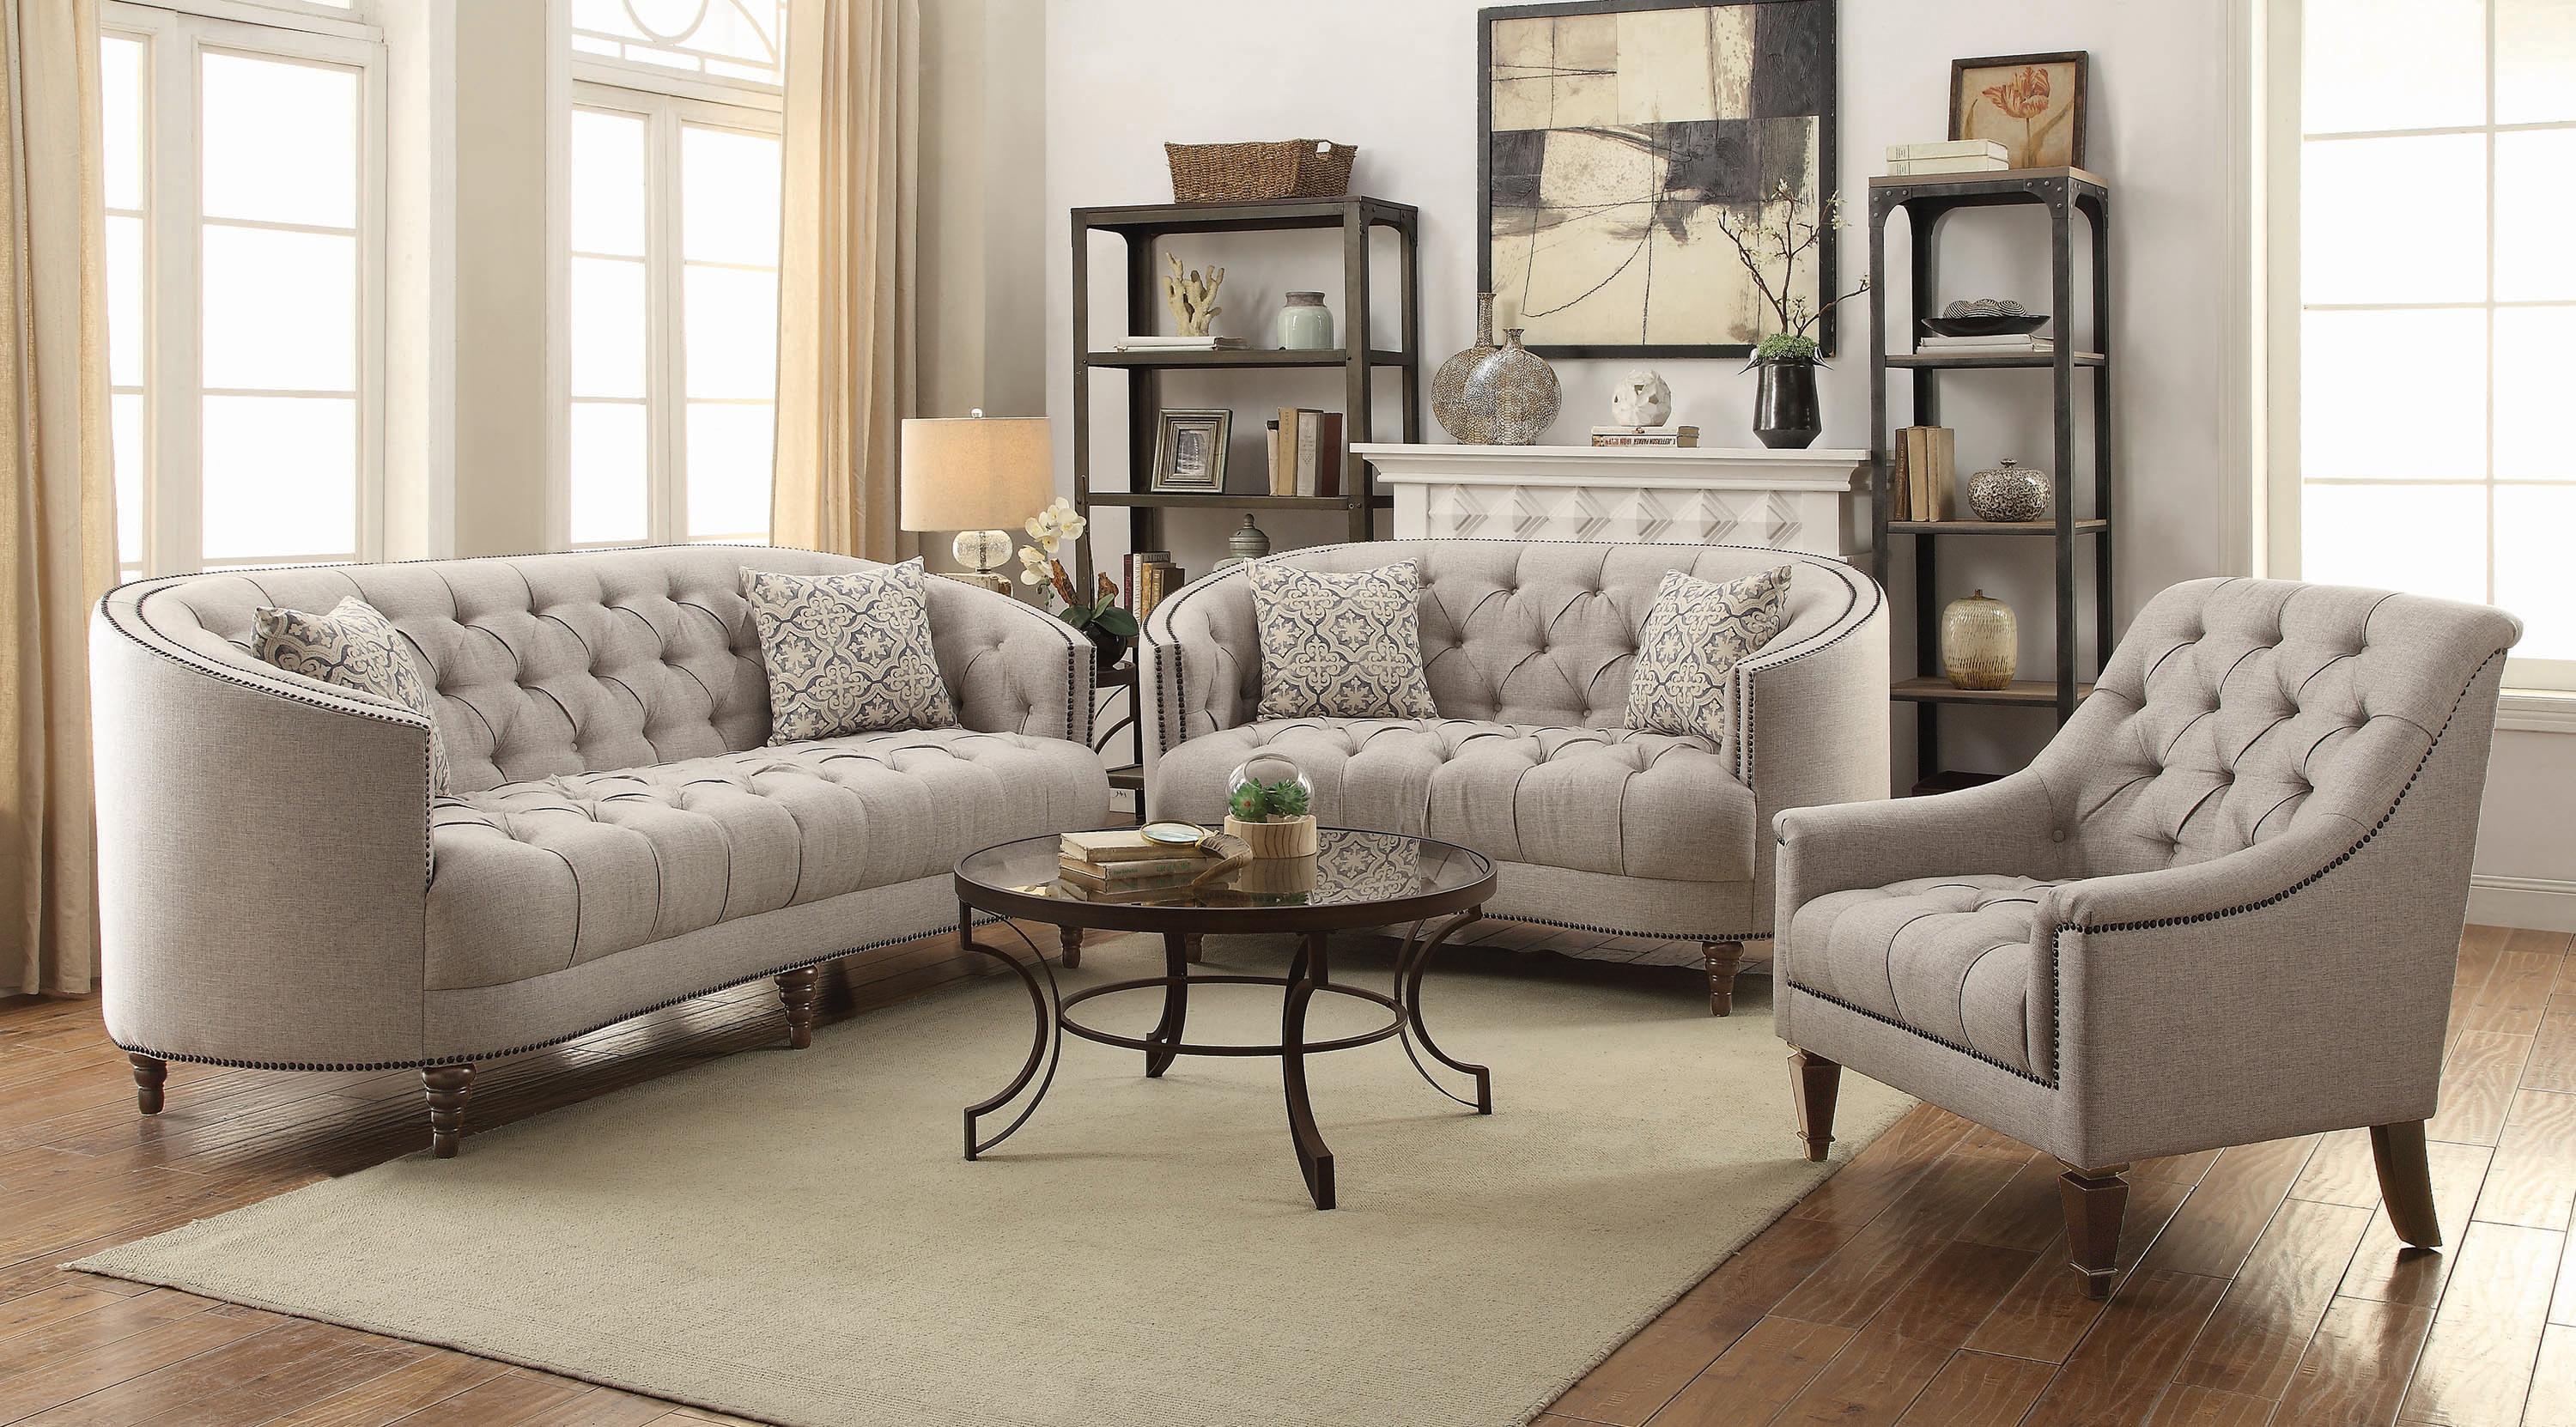 Classic Living Room Set 505641-S2 Avonlea 505641-S2 in Gray 